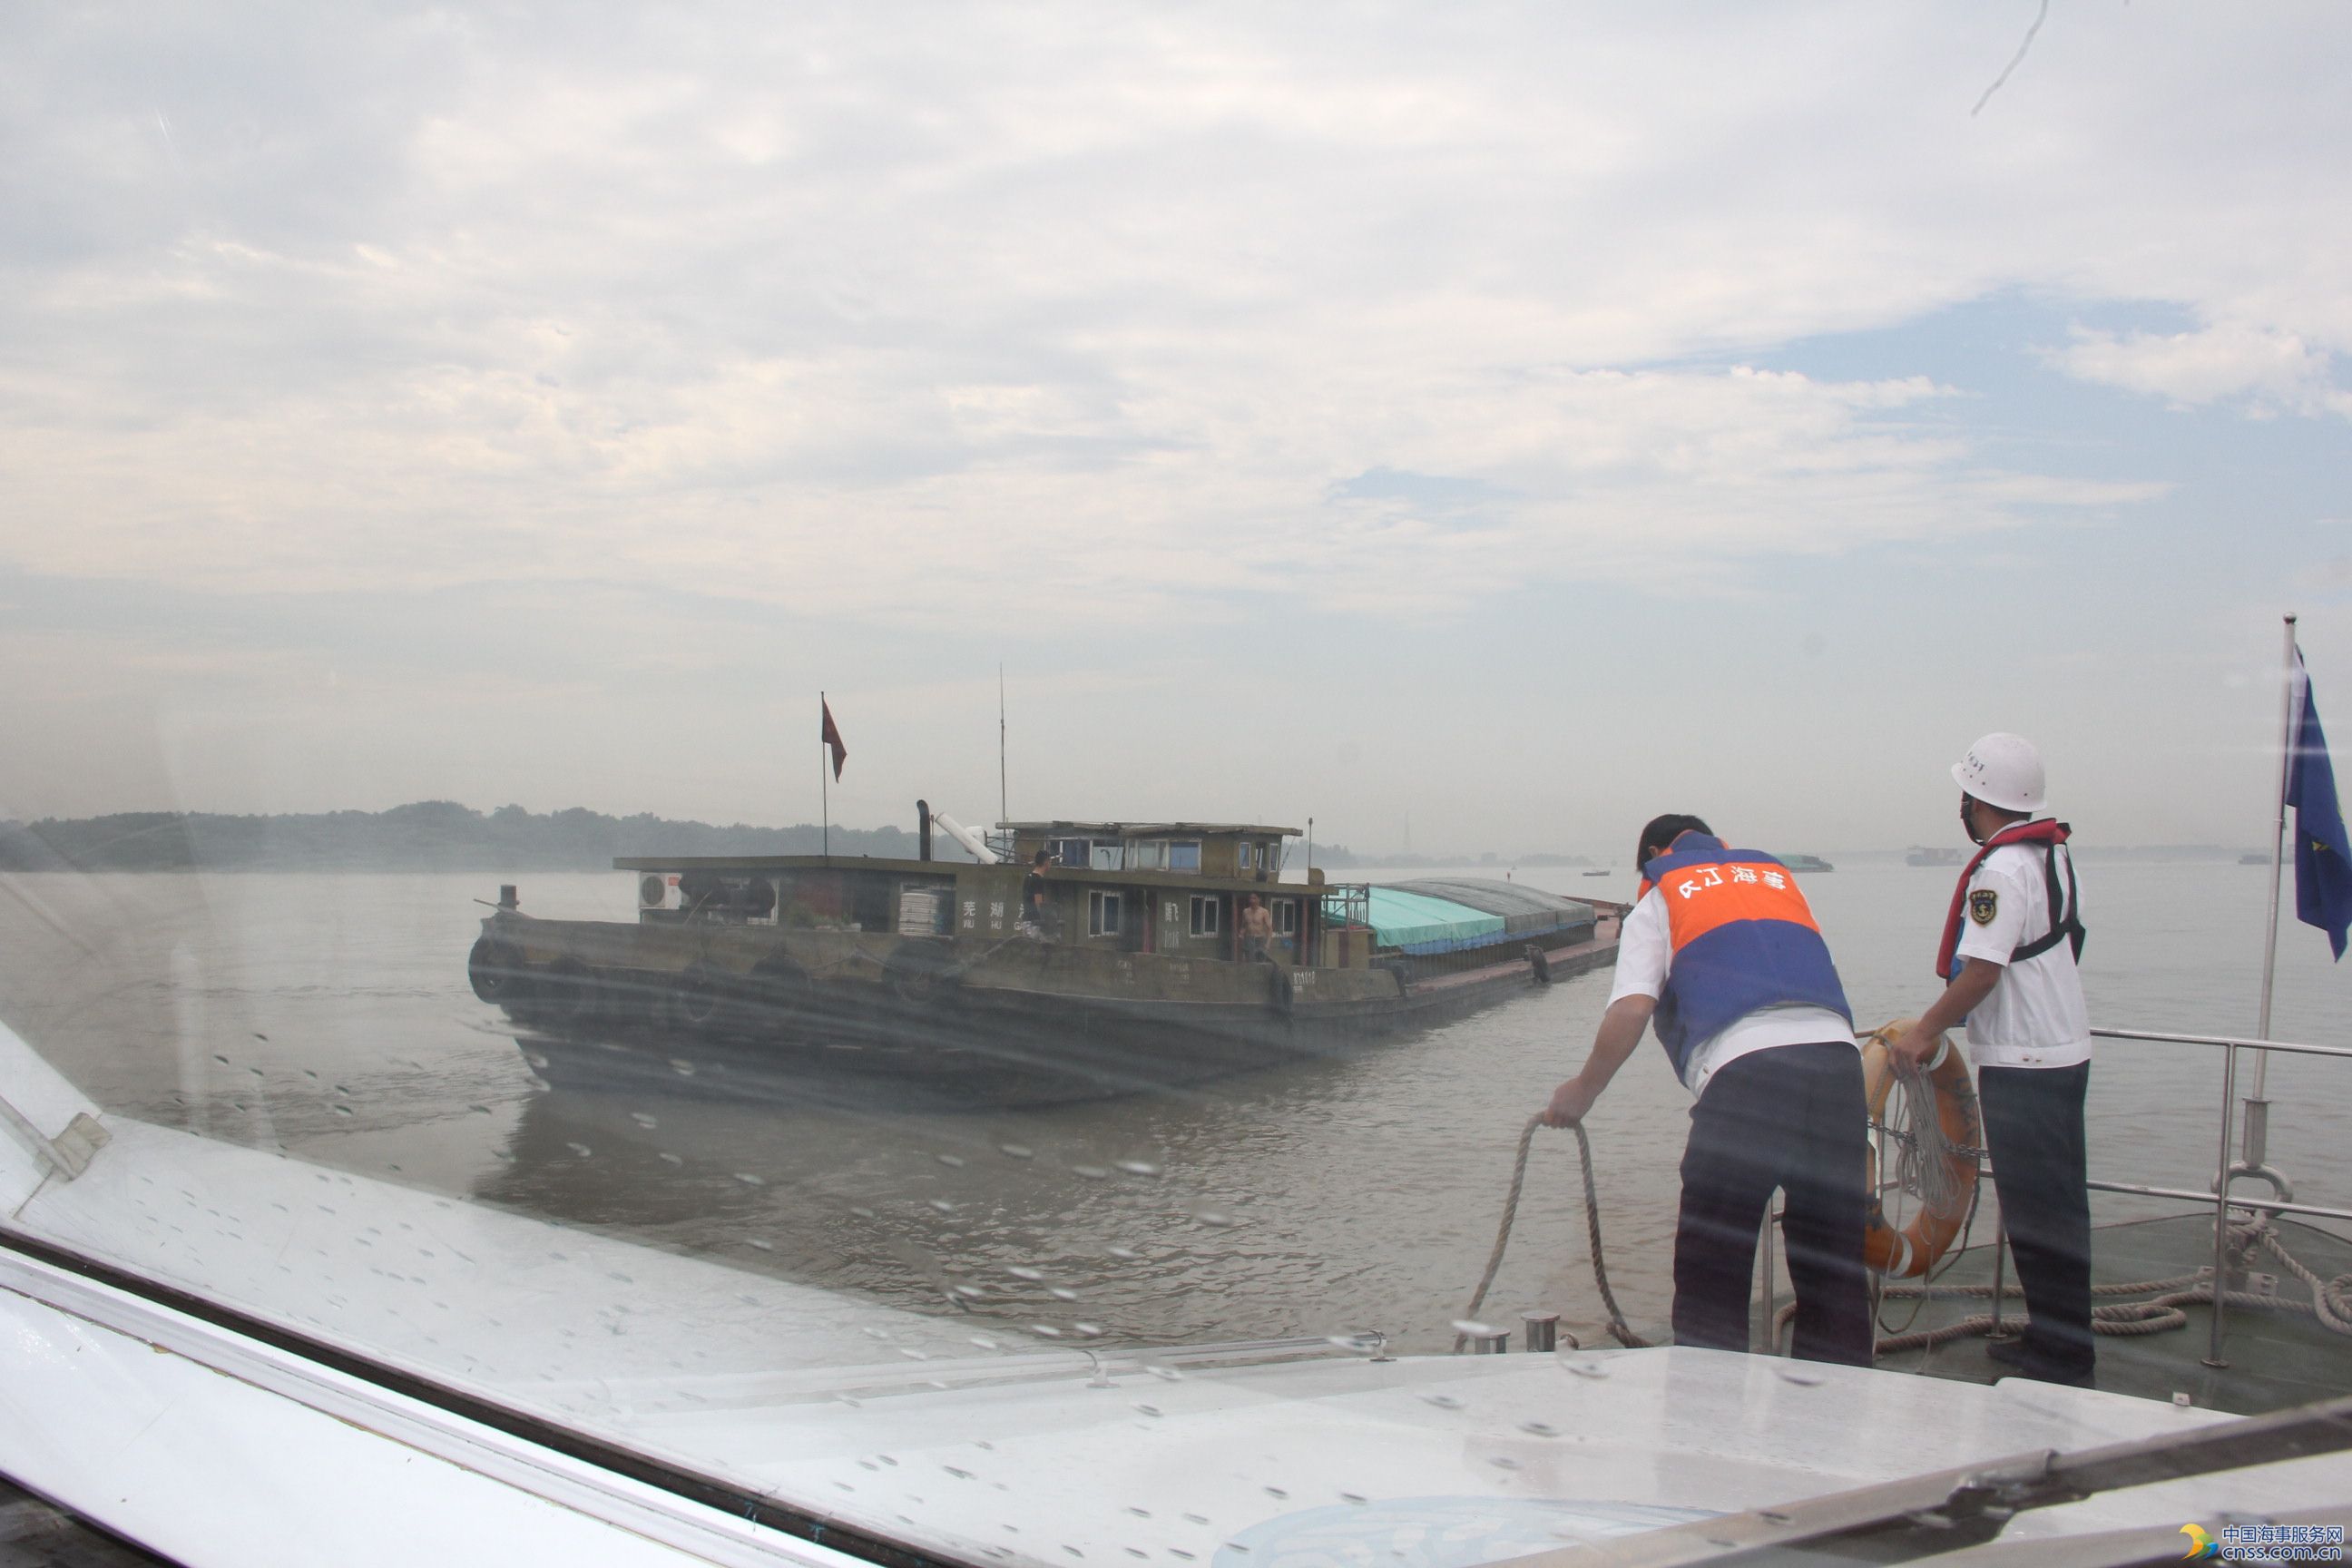 船舶失控江中央“自转” 安庆海事紧急拖带除险 